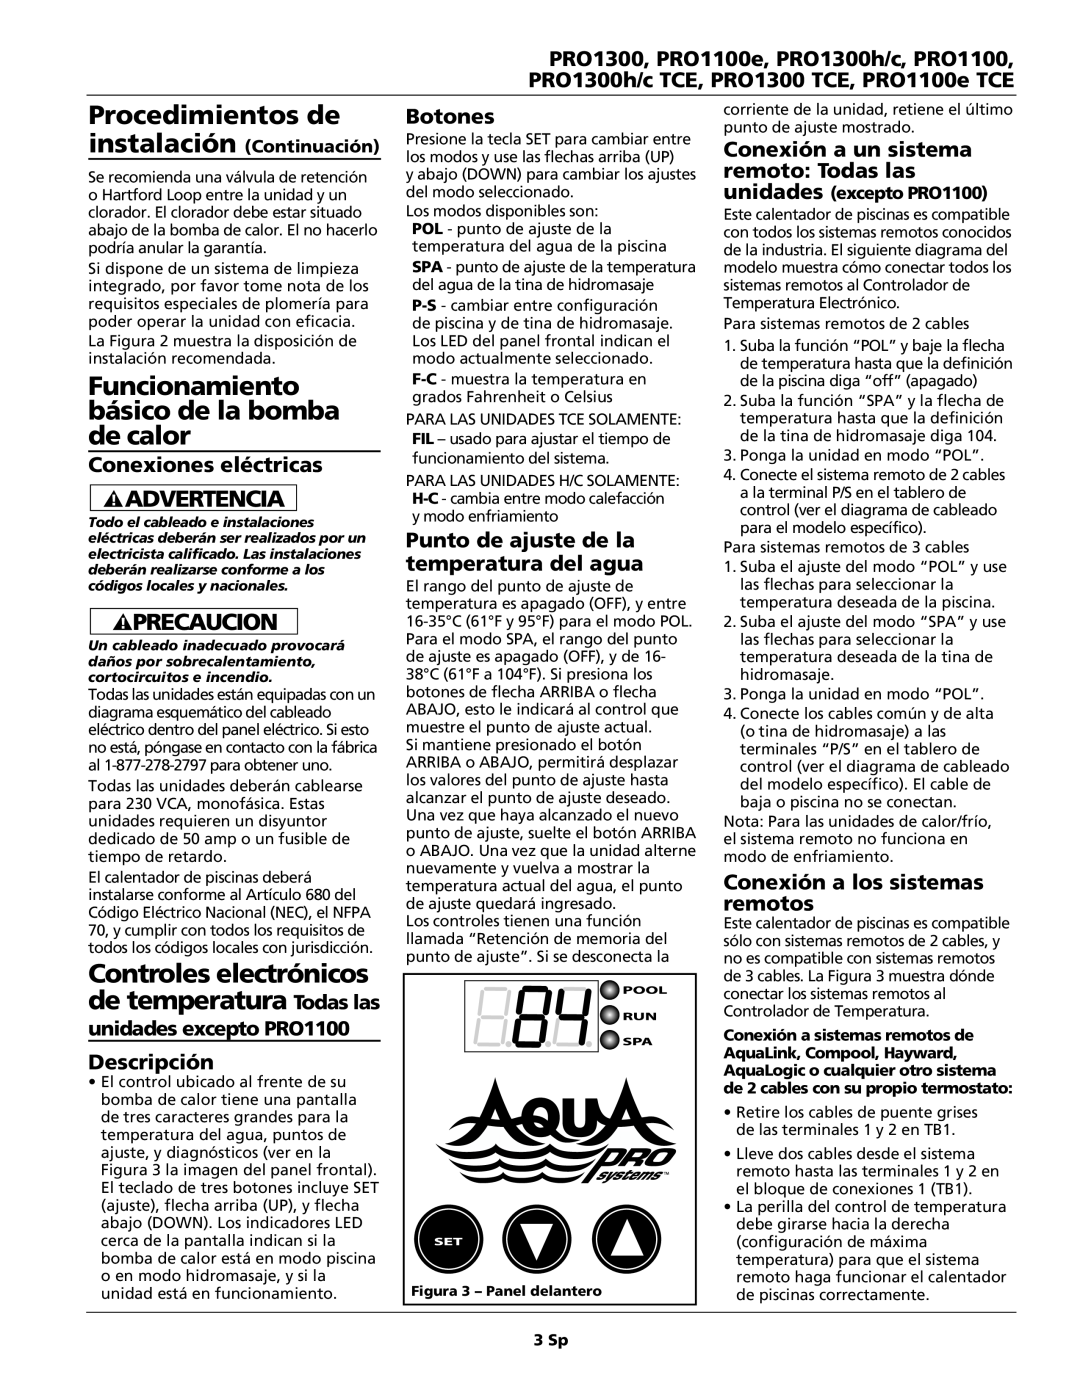 AquaPRO PRO1100 Procedimientos de, Funcionamiento básico de la bomba de calor, Conexiones eléctricas, Descripción, Botones 